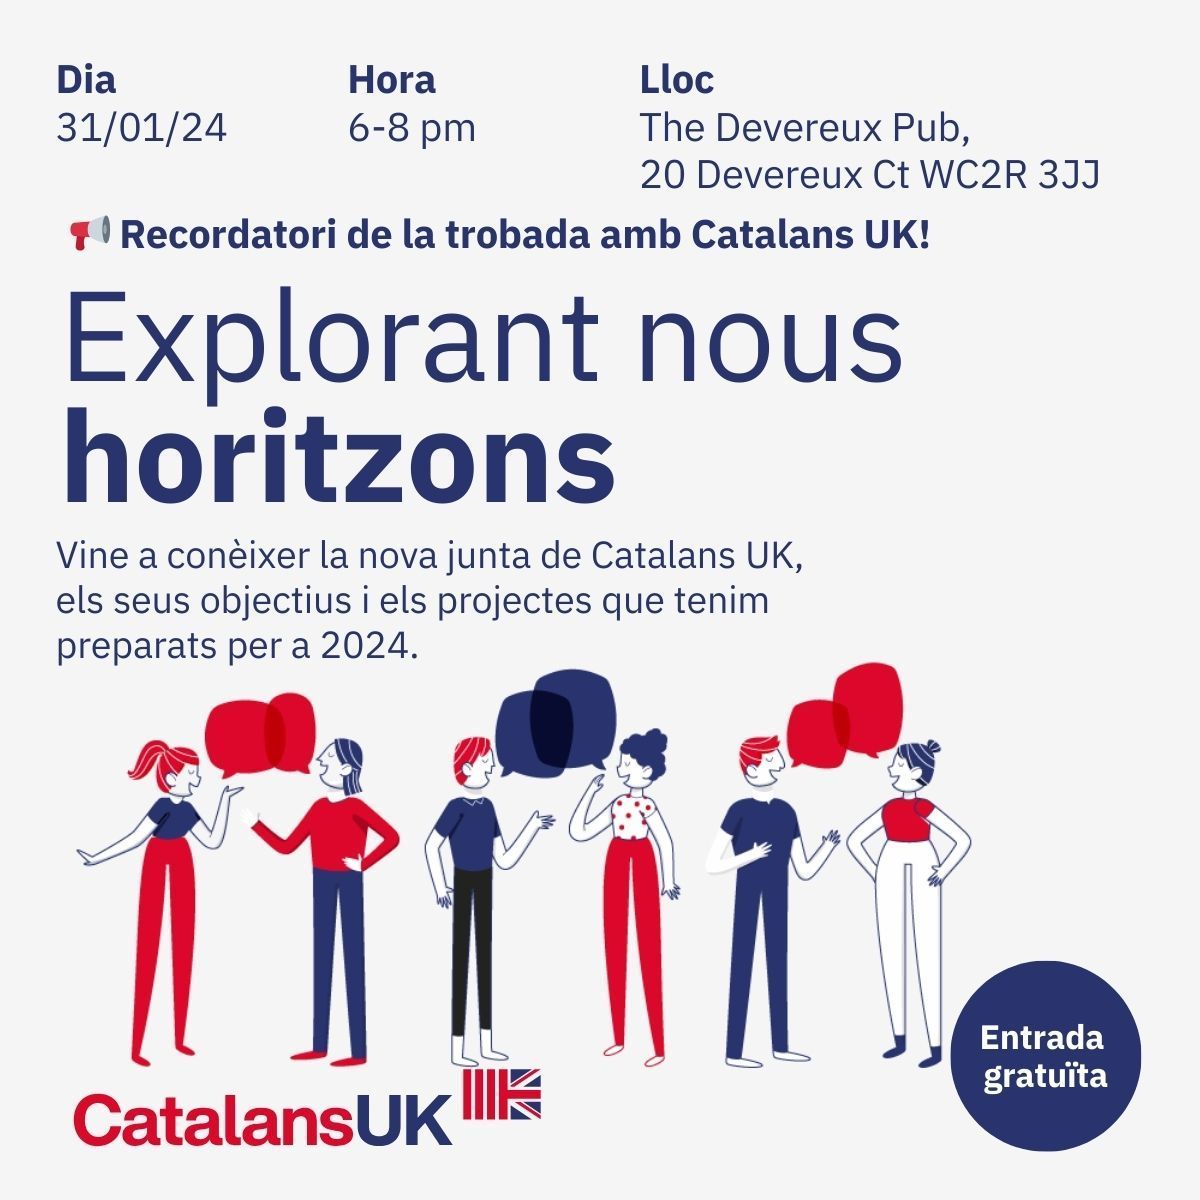 No et perdis la trobada a Londres amb Catalans UK i membres de la comunitat catalana: 🎟️ Registra't ara per assegurar el teu lloc:rb.gy/7f9wi0. Entrada gratuïta 📅 Data: 31 de Gener 2024 ⏰ Hora: 18-20 📍 Lloc: The Devereux Pub, 20 Devereux Ct, Temple, London WC2R 3JJ